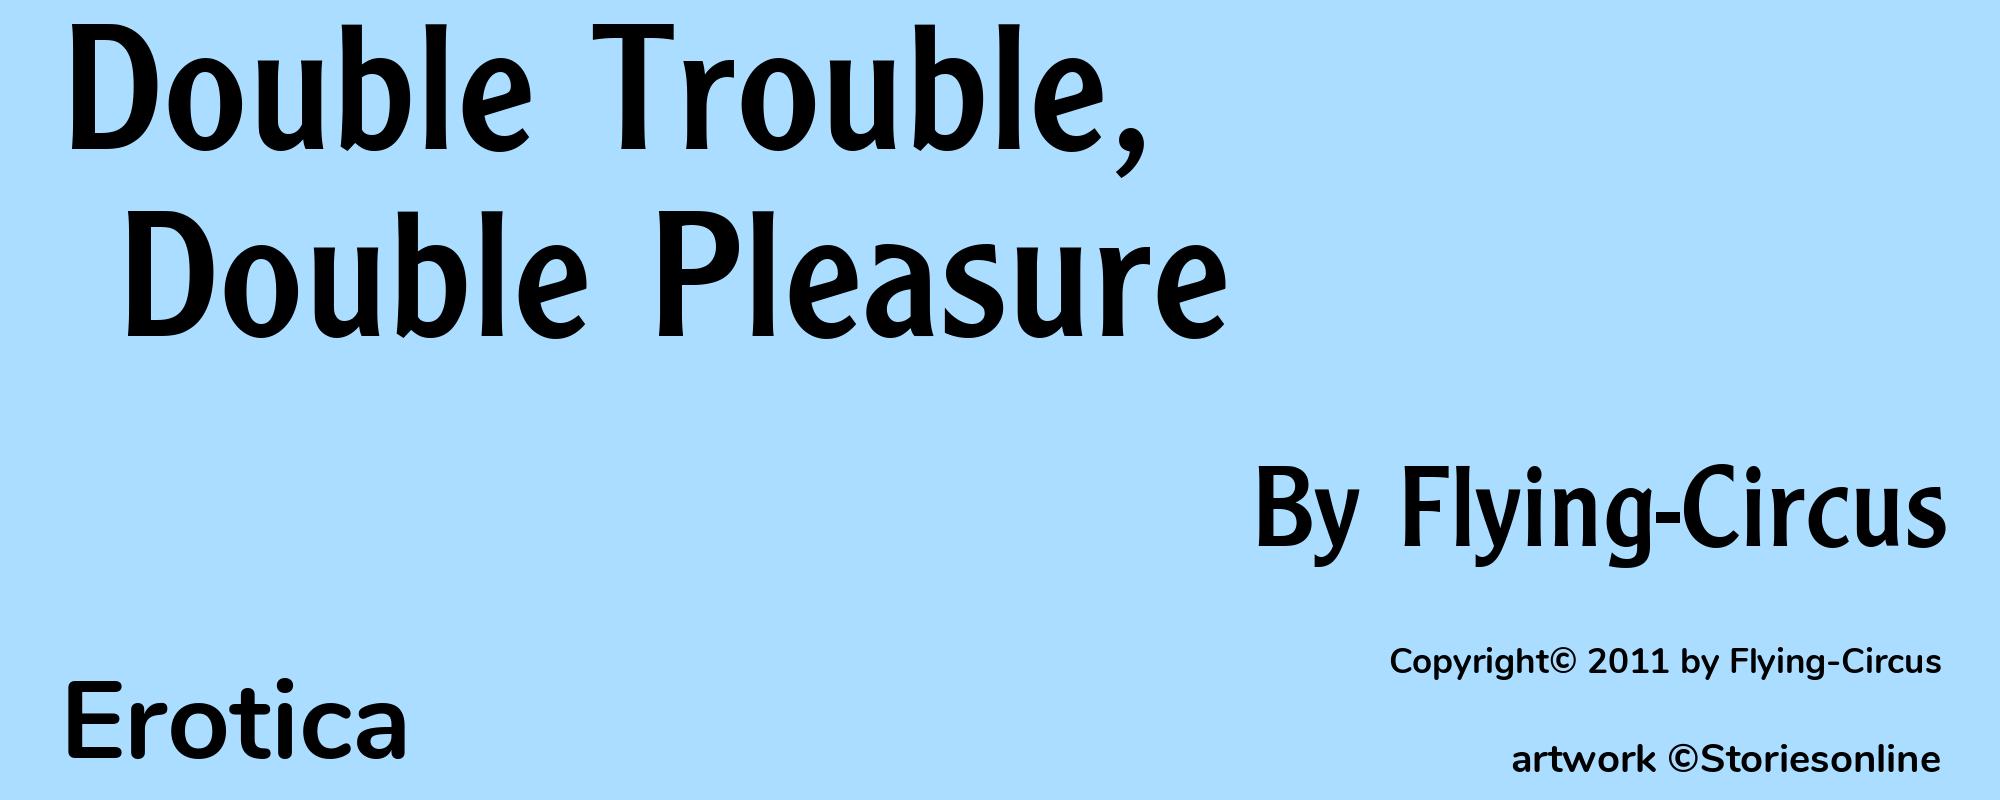 Double Trouble, Double Pleasure - Cover